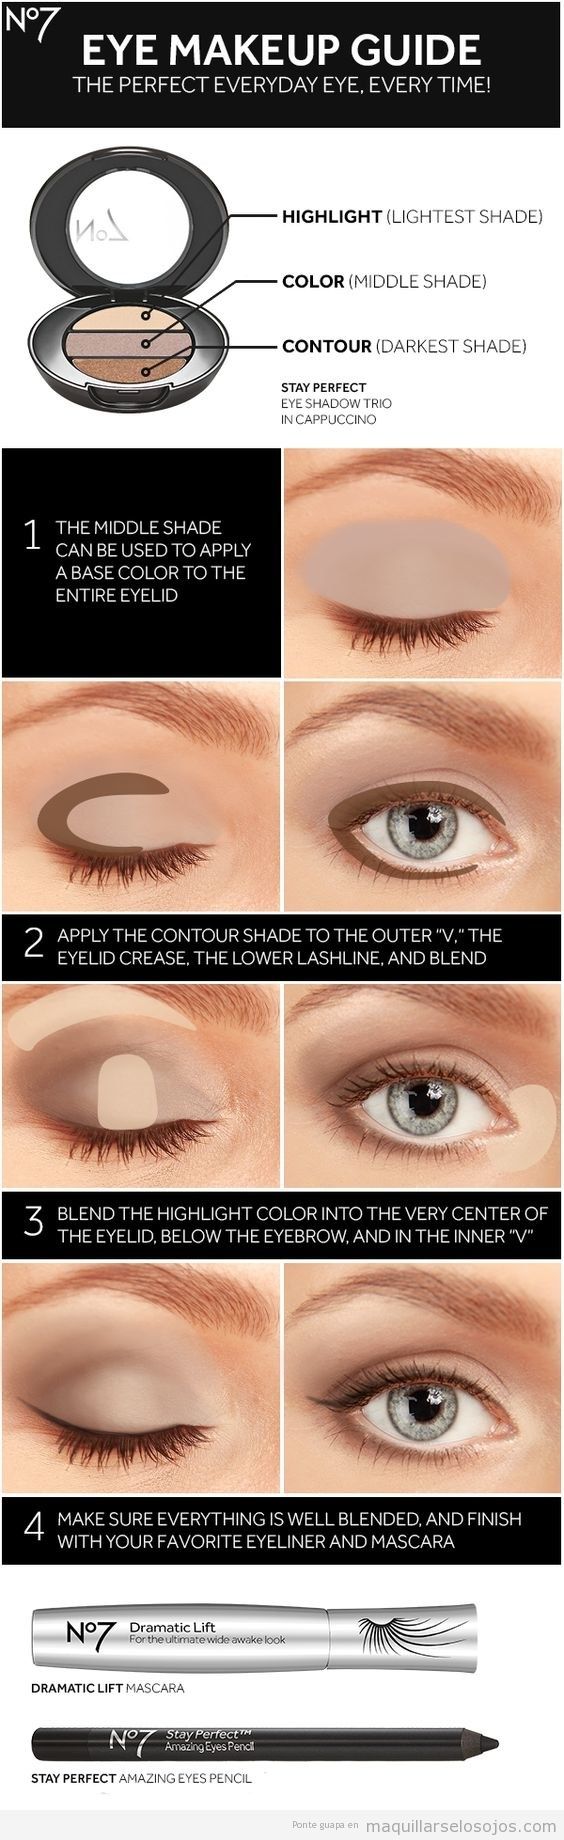 Trucos para aplicar la correcta sombra de ojos en cada zona del párpado